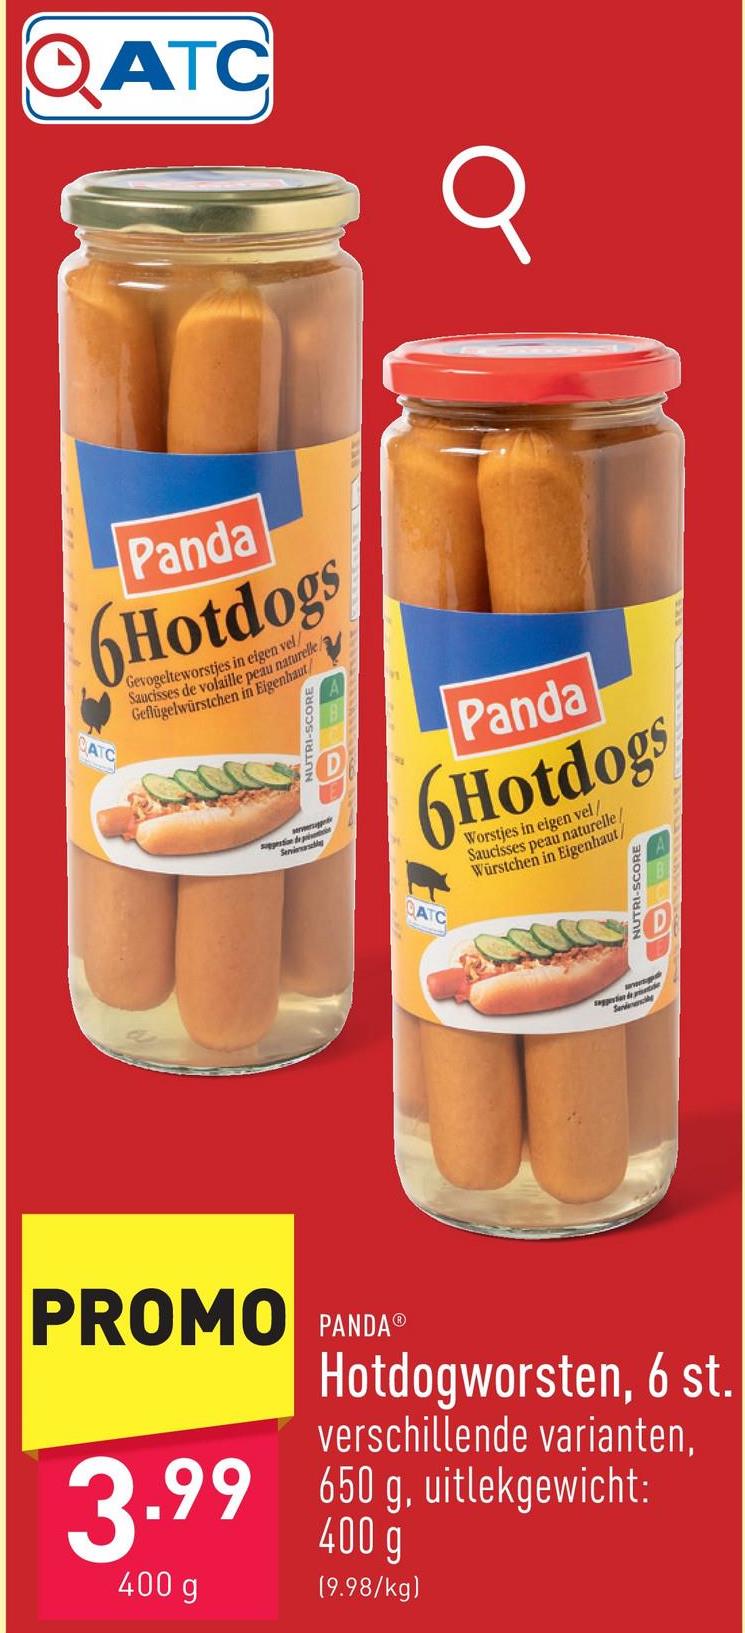 Hotdogworsten XL, 6 st. keuze uit verschillende varianten, 650 g, uitlekgewicht: 400 g